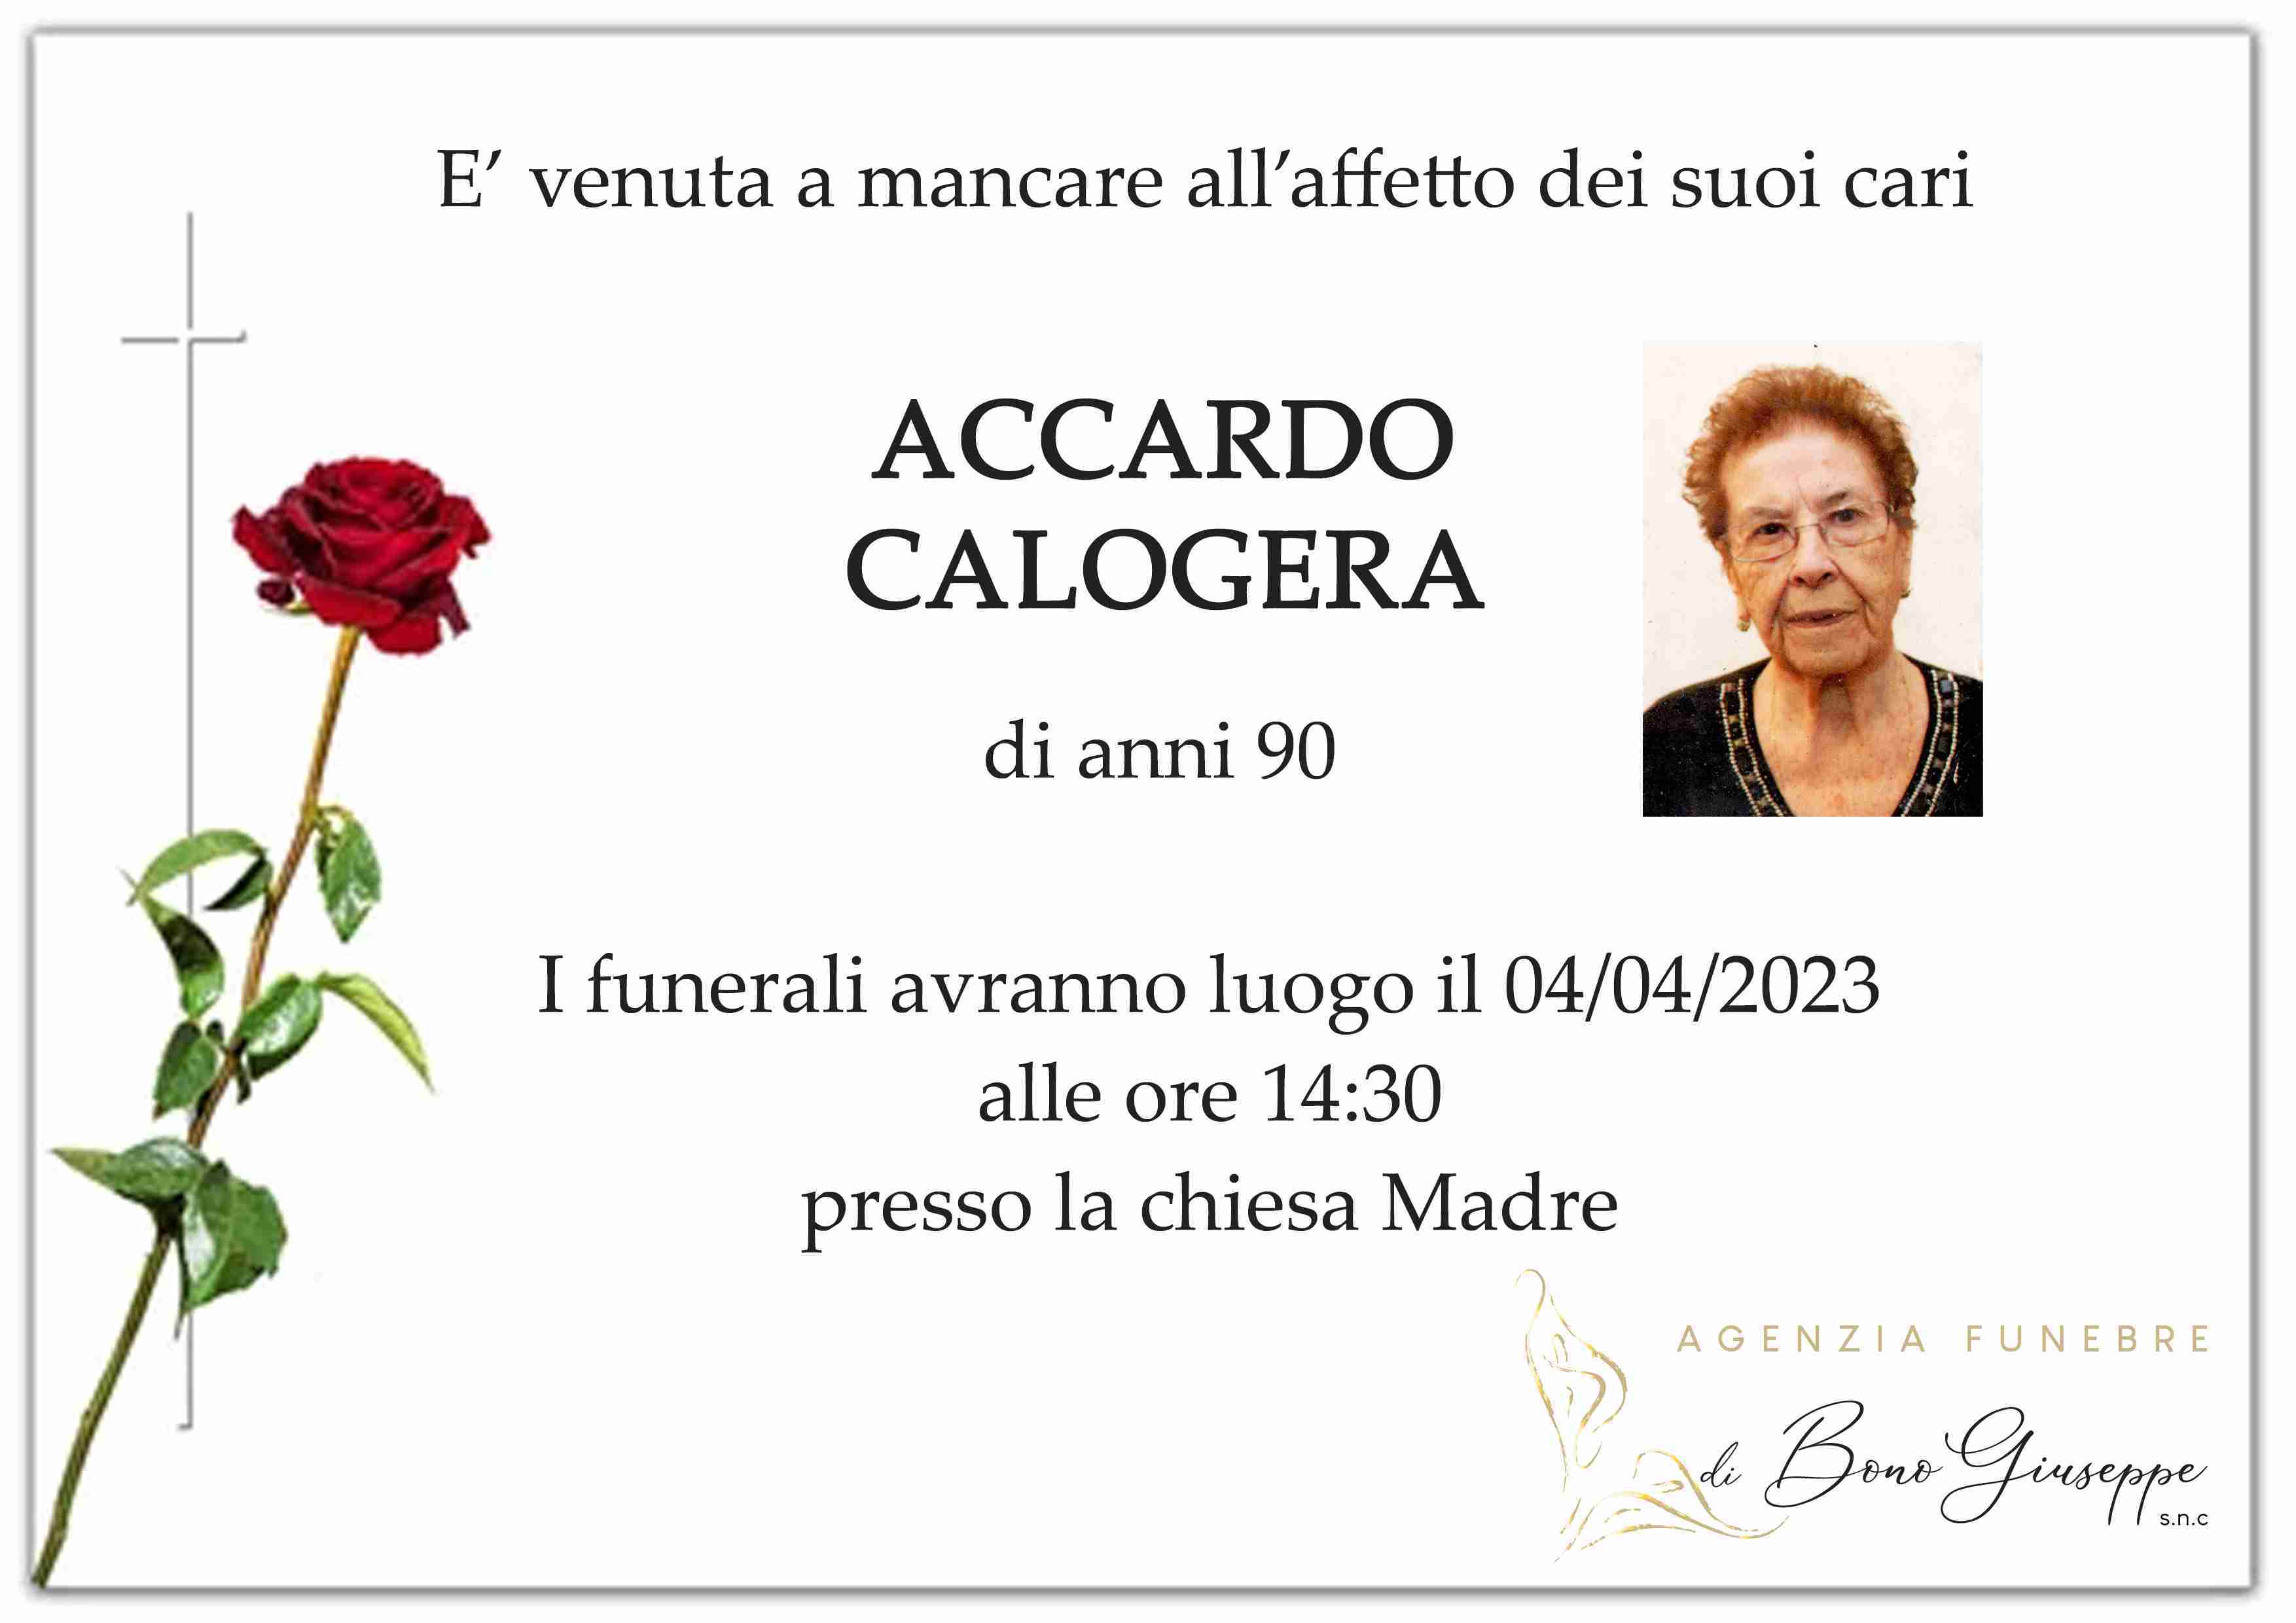 Calogera Accardo